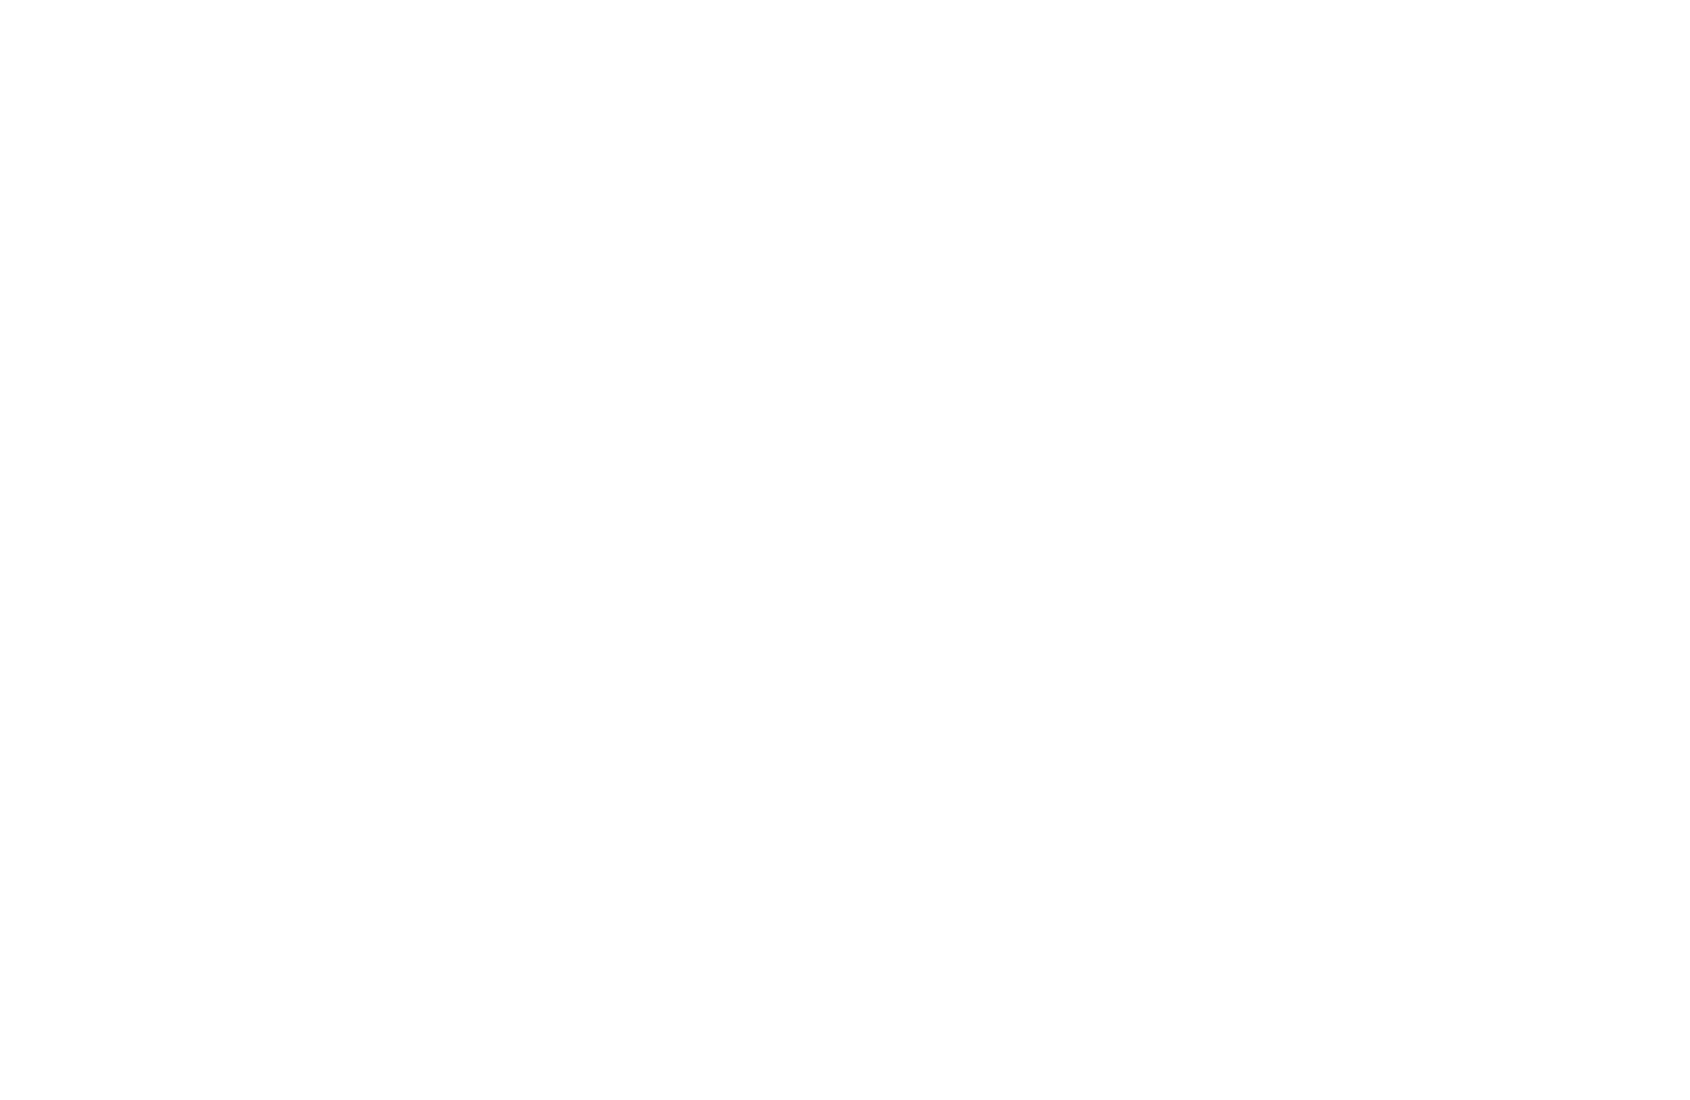 ワールドカーリングツアージャパン 日本TOPチーム強化試合 in 軽井沢